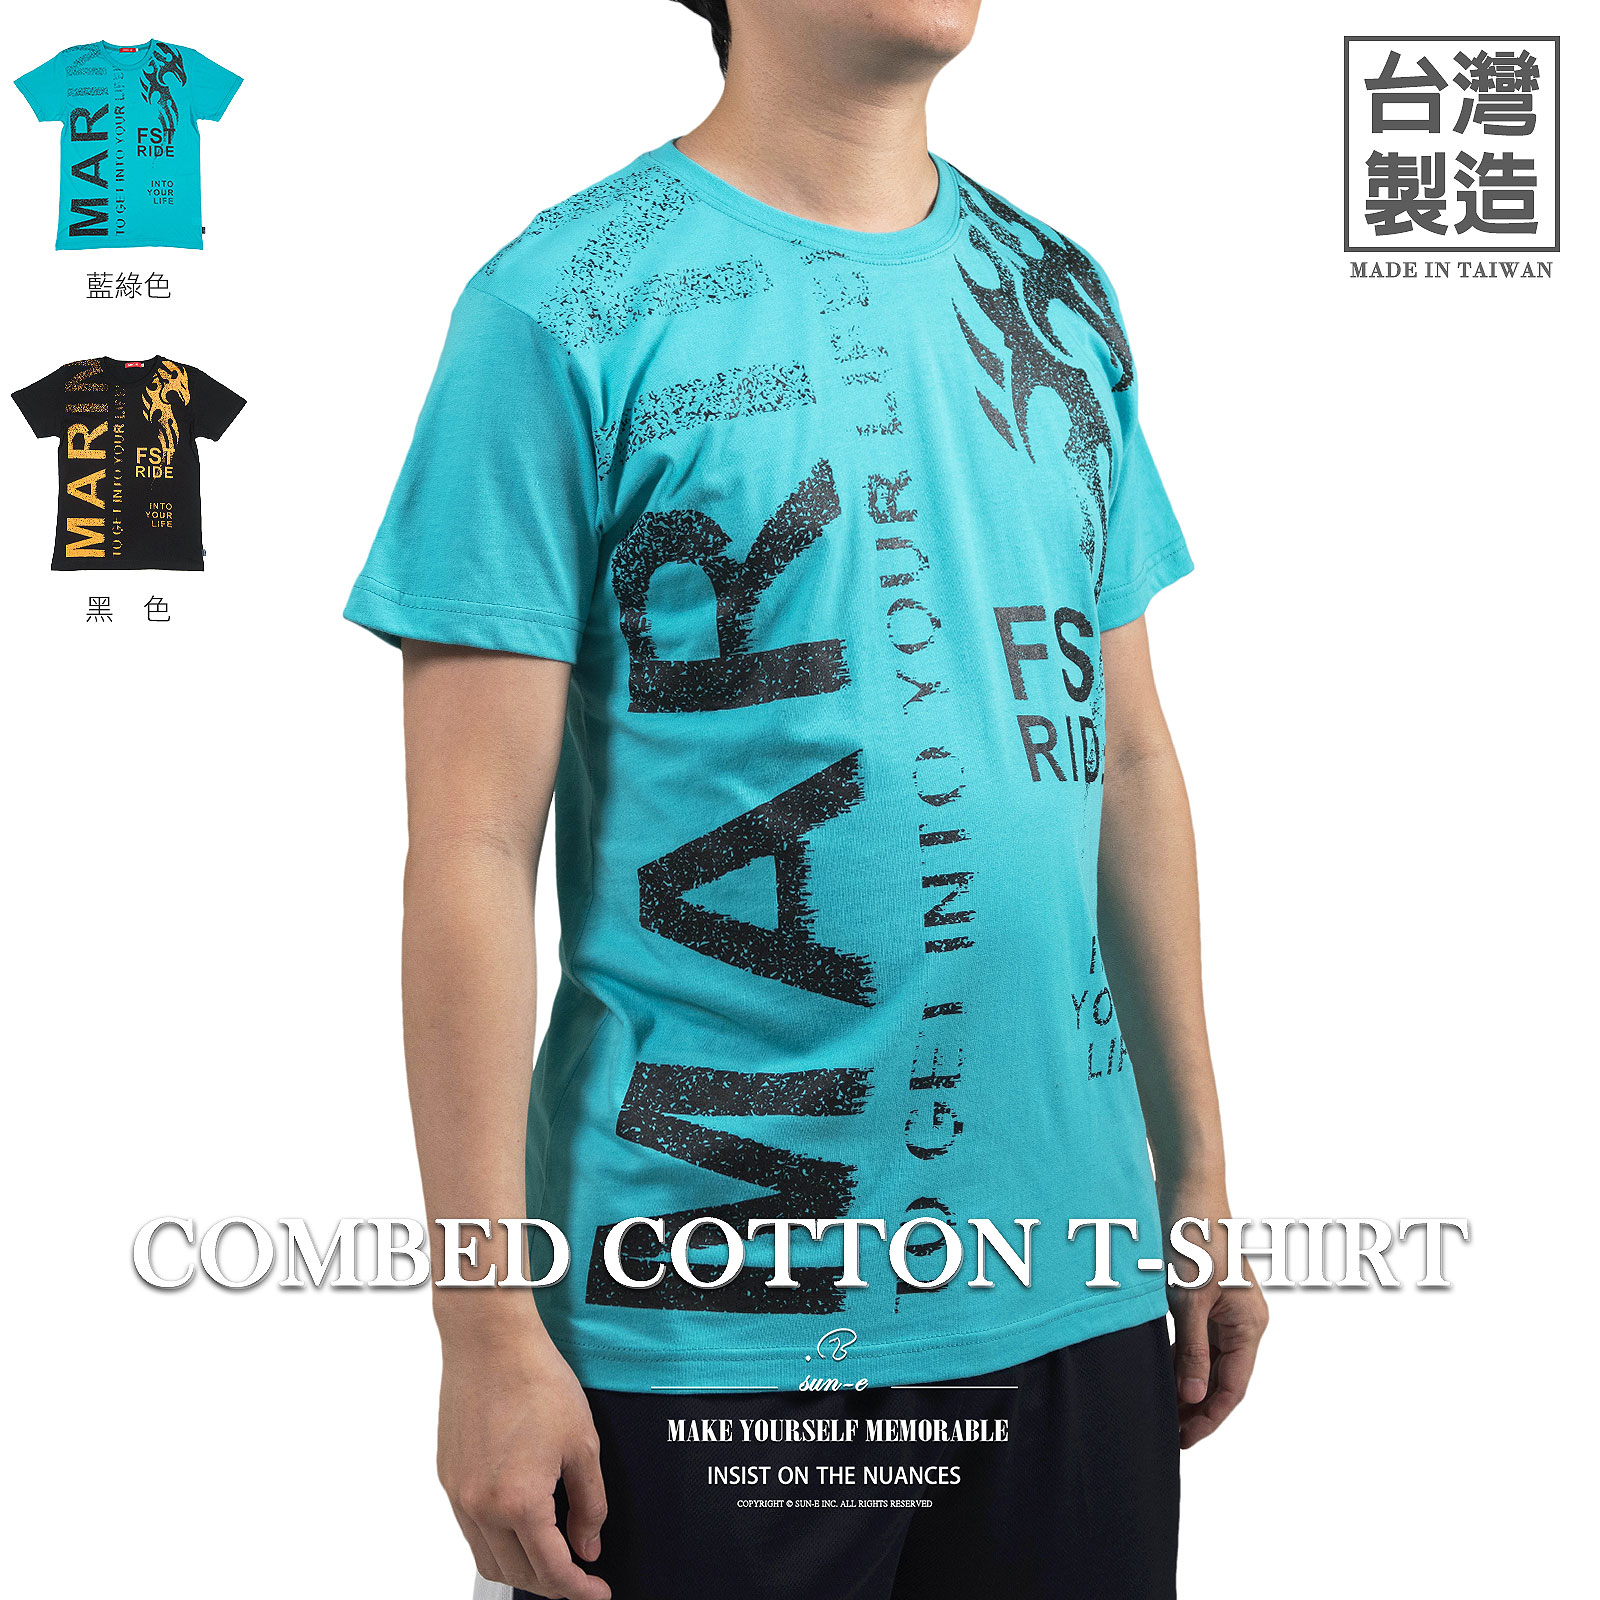 精梳棉T恤 台灣製T恤 短袖T恤 圓領T恤 英文字T恤 休閒T恤 短袖上衣 短Tee 黑色T恤 圖案滿版T恤 Made In Taiwan T-shirts Combed Cotton T-shirt Short Sleeve T-shirts Crew Neck T-Shirts Full Pattern T-Shirts (310-3108-08)藍綠色、(310-3108-21)黑色 L XL (胸圍:42~45英吋 / 107~114公分) 男 [實體店面保障] sun-e